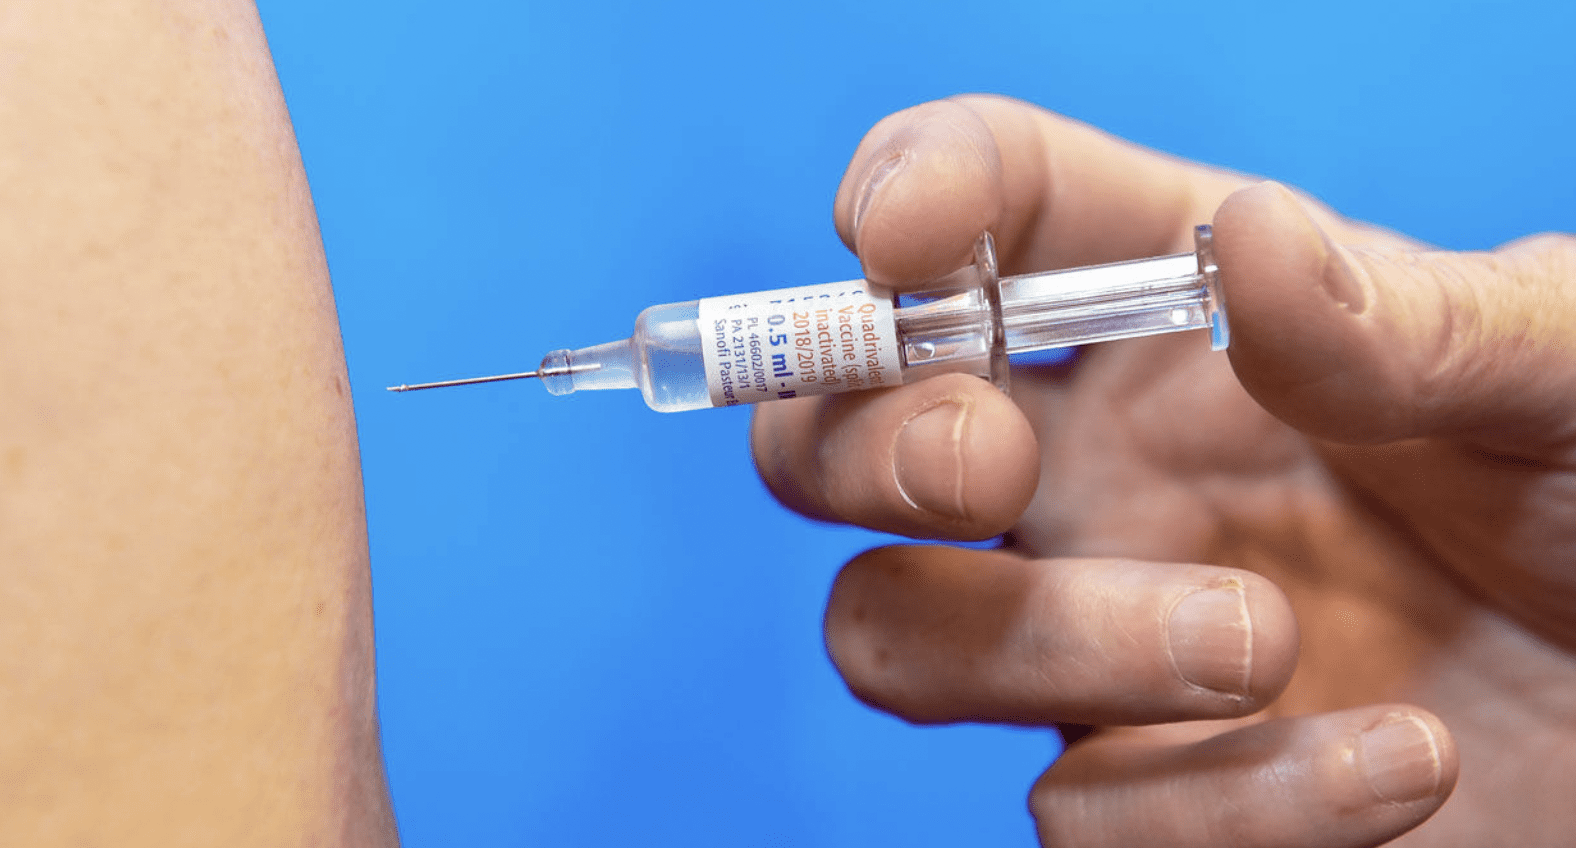  إدارة المترو تعلن عن استمرار تطعيم وتسجيل جميع العاملين بلقاح كورونا 